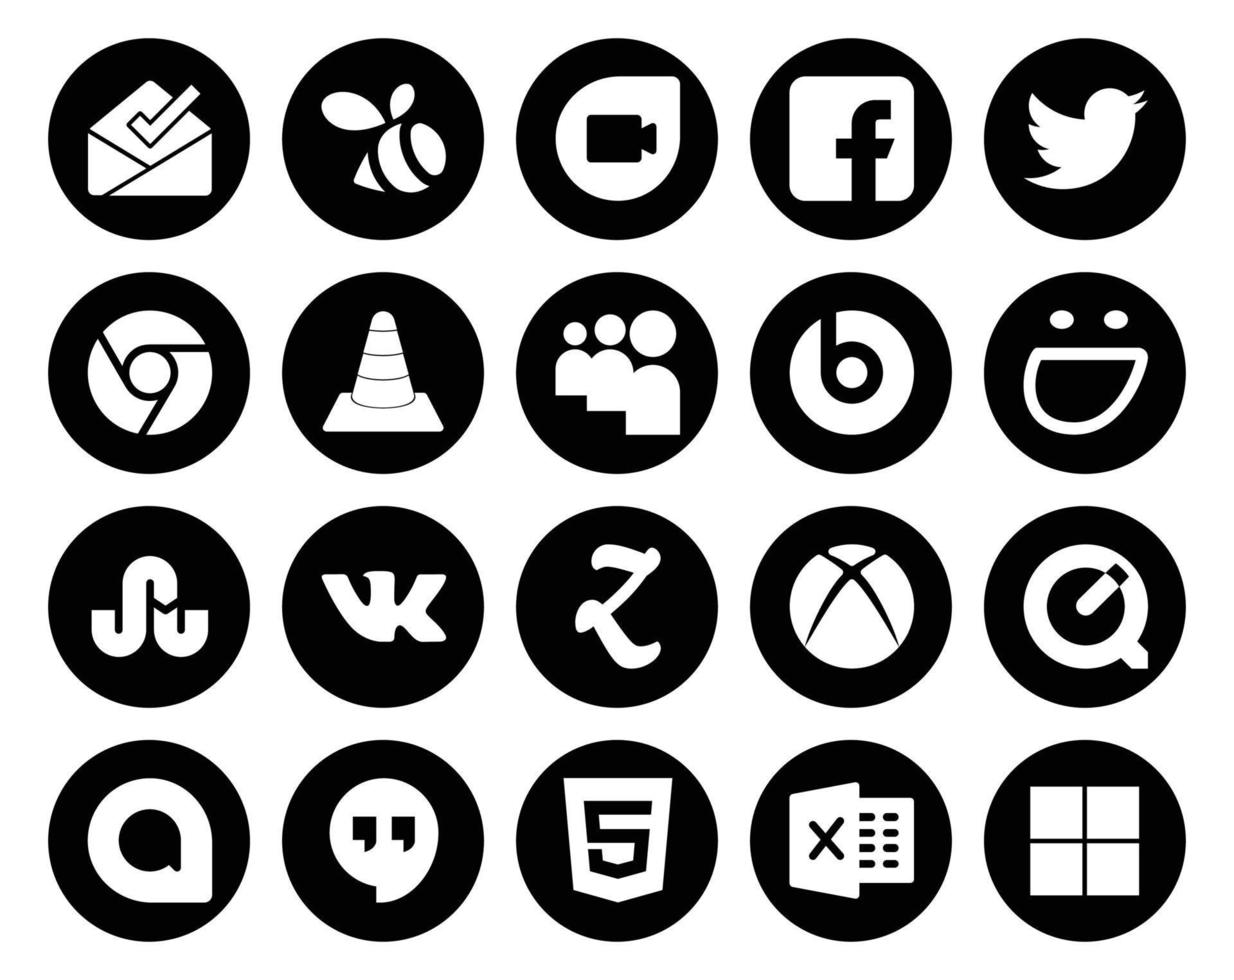 20 Social Media Icon Pack Including quicktime zootool media vk smugmug vector